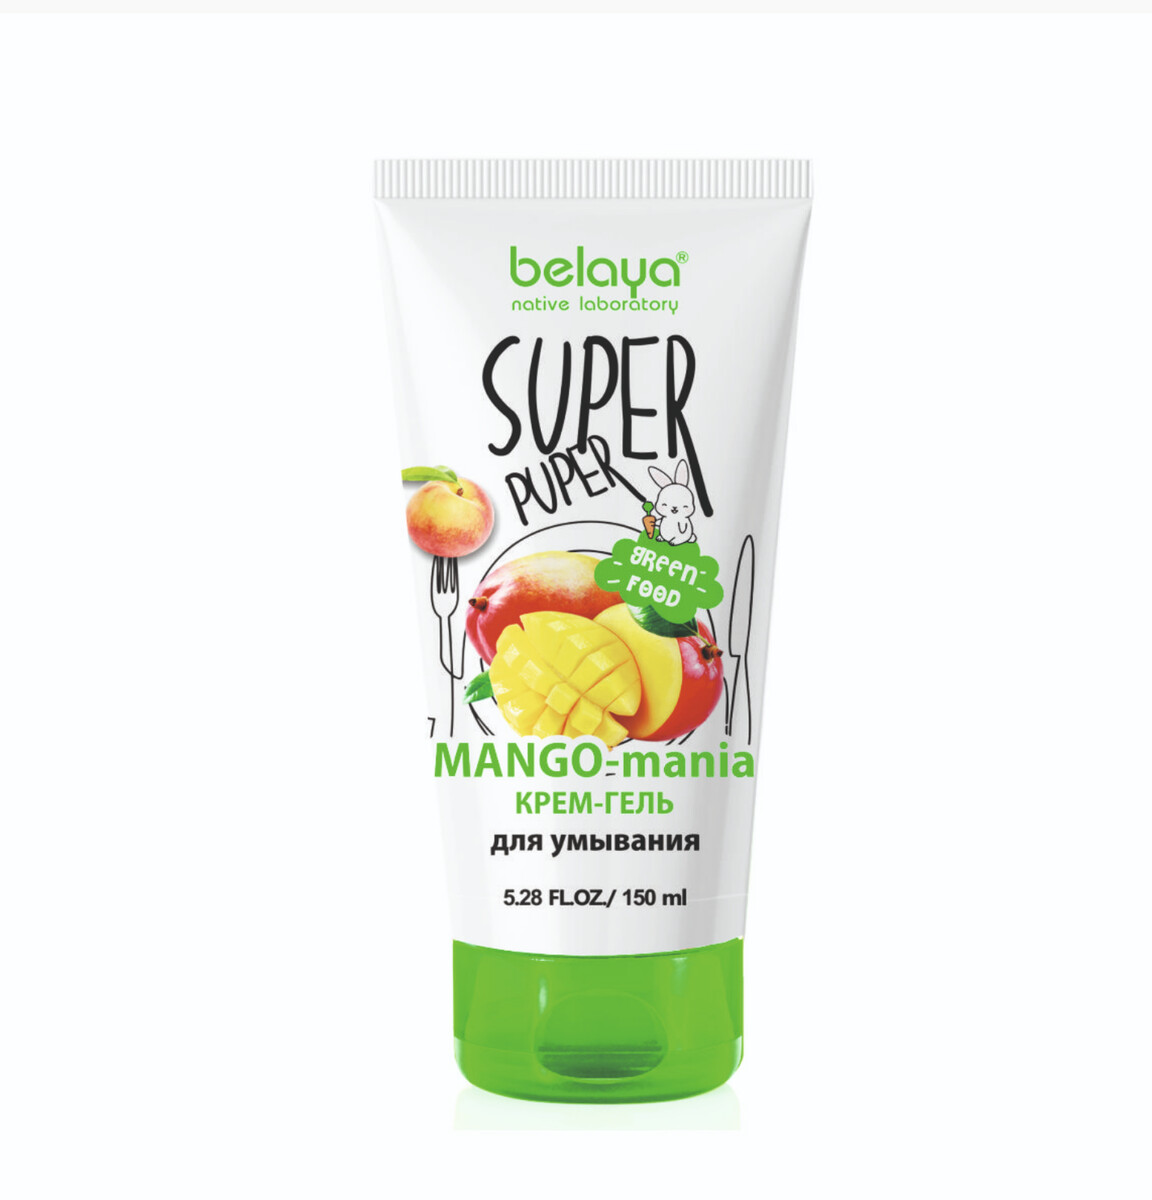 Super puper крем-гель для умывания (mango-mania) 150мл